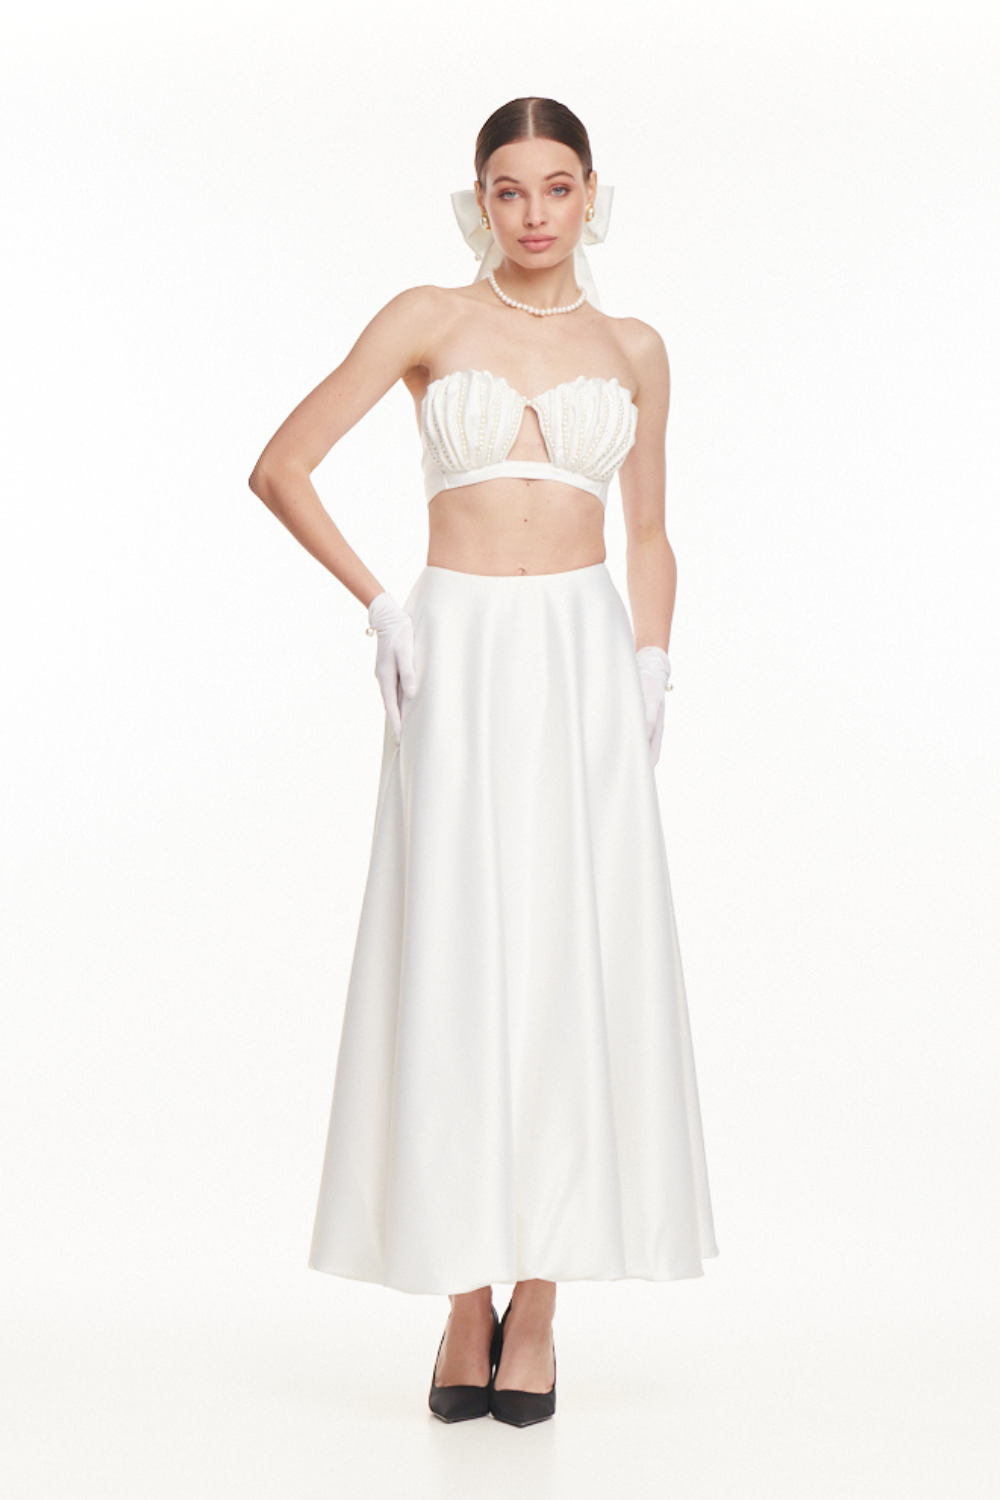 Bílá sukně WAVE, Bílá, (Mint), 22010265